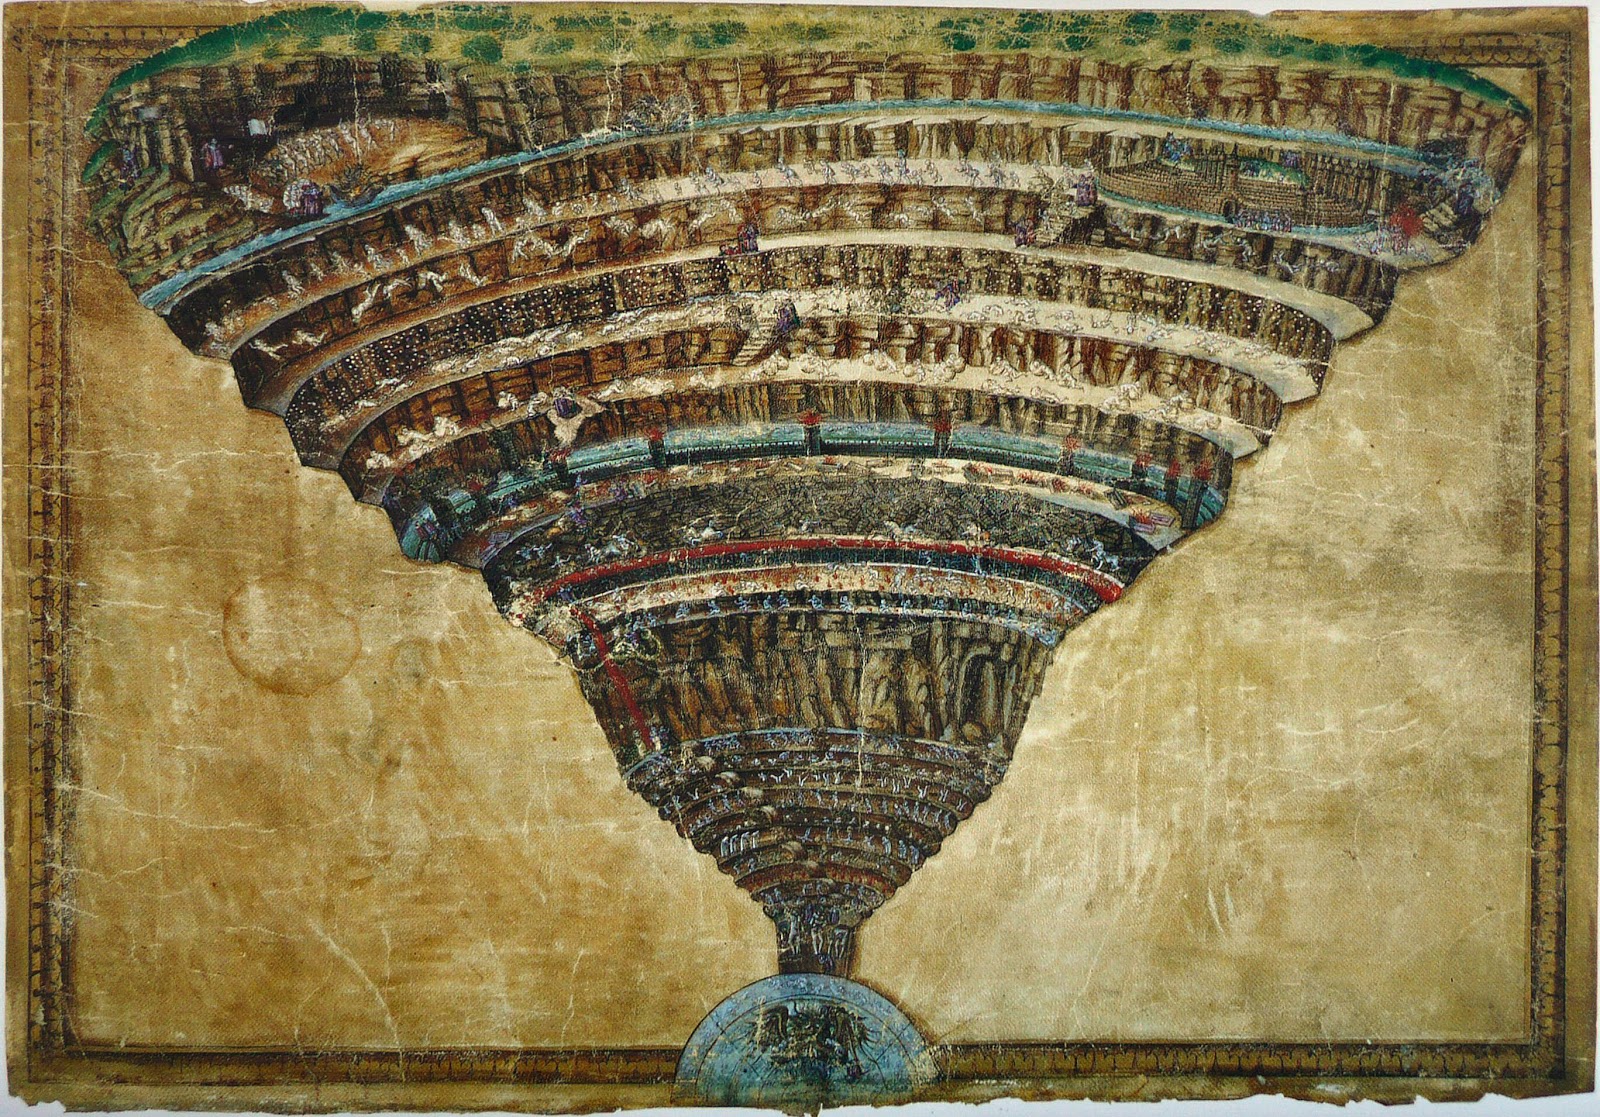 Sandro+Botticelli-1445-1510 (300).jpg